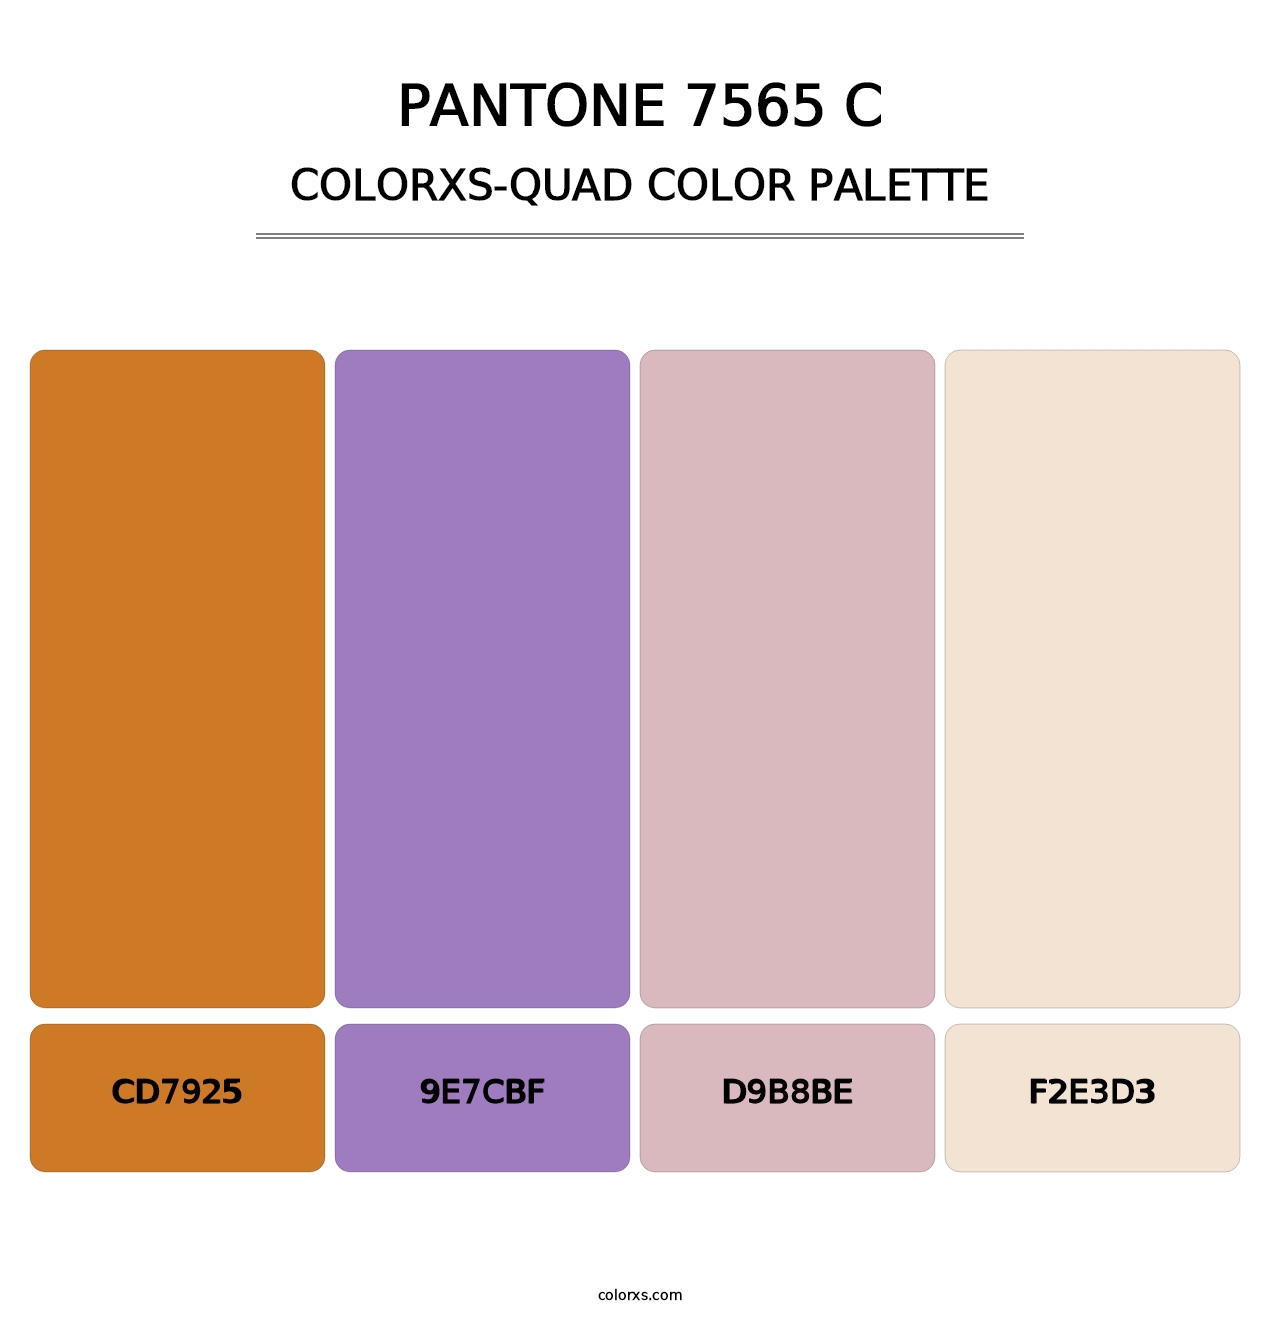 PANTONE 7565 C - Colorxs Quad Palette